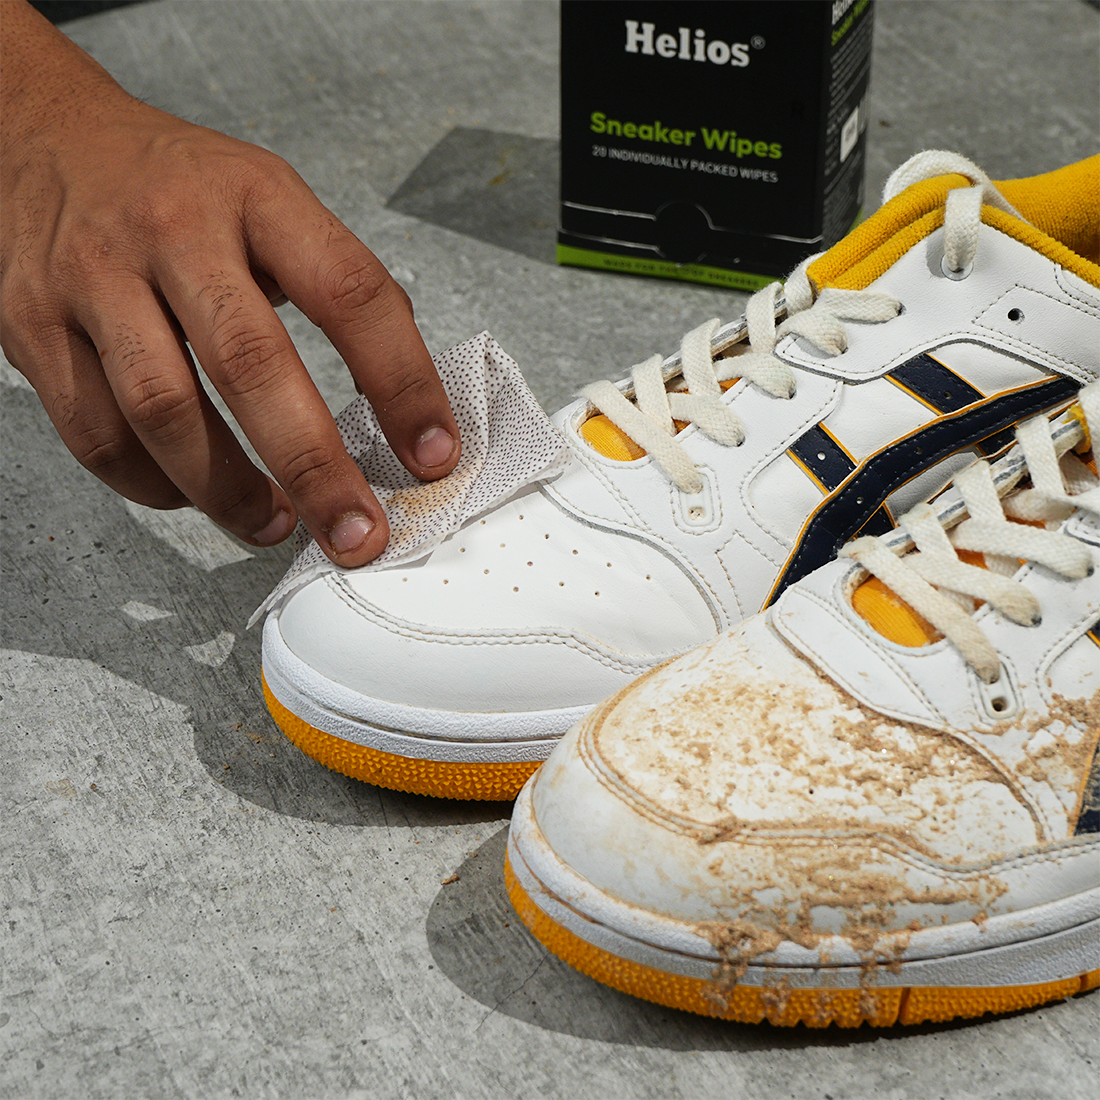 Helios Sneaker Wipes Pack of 20